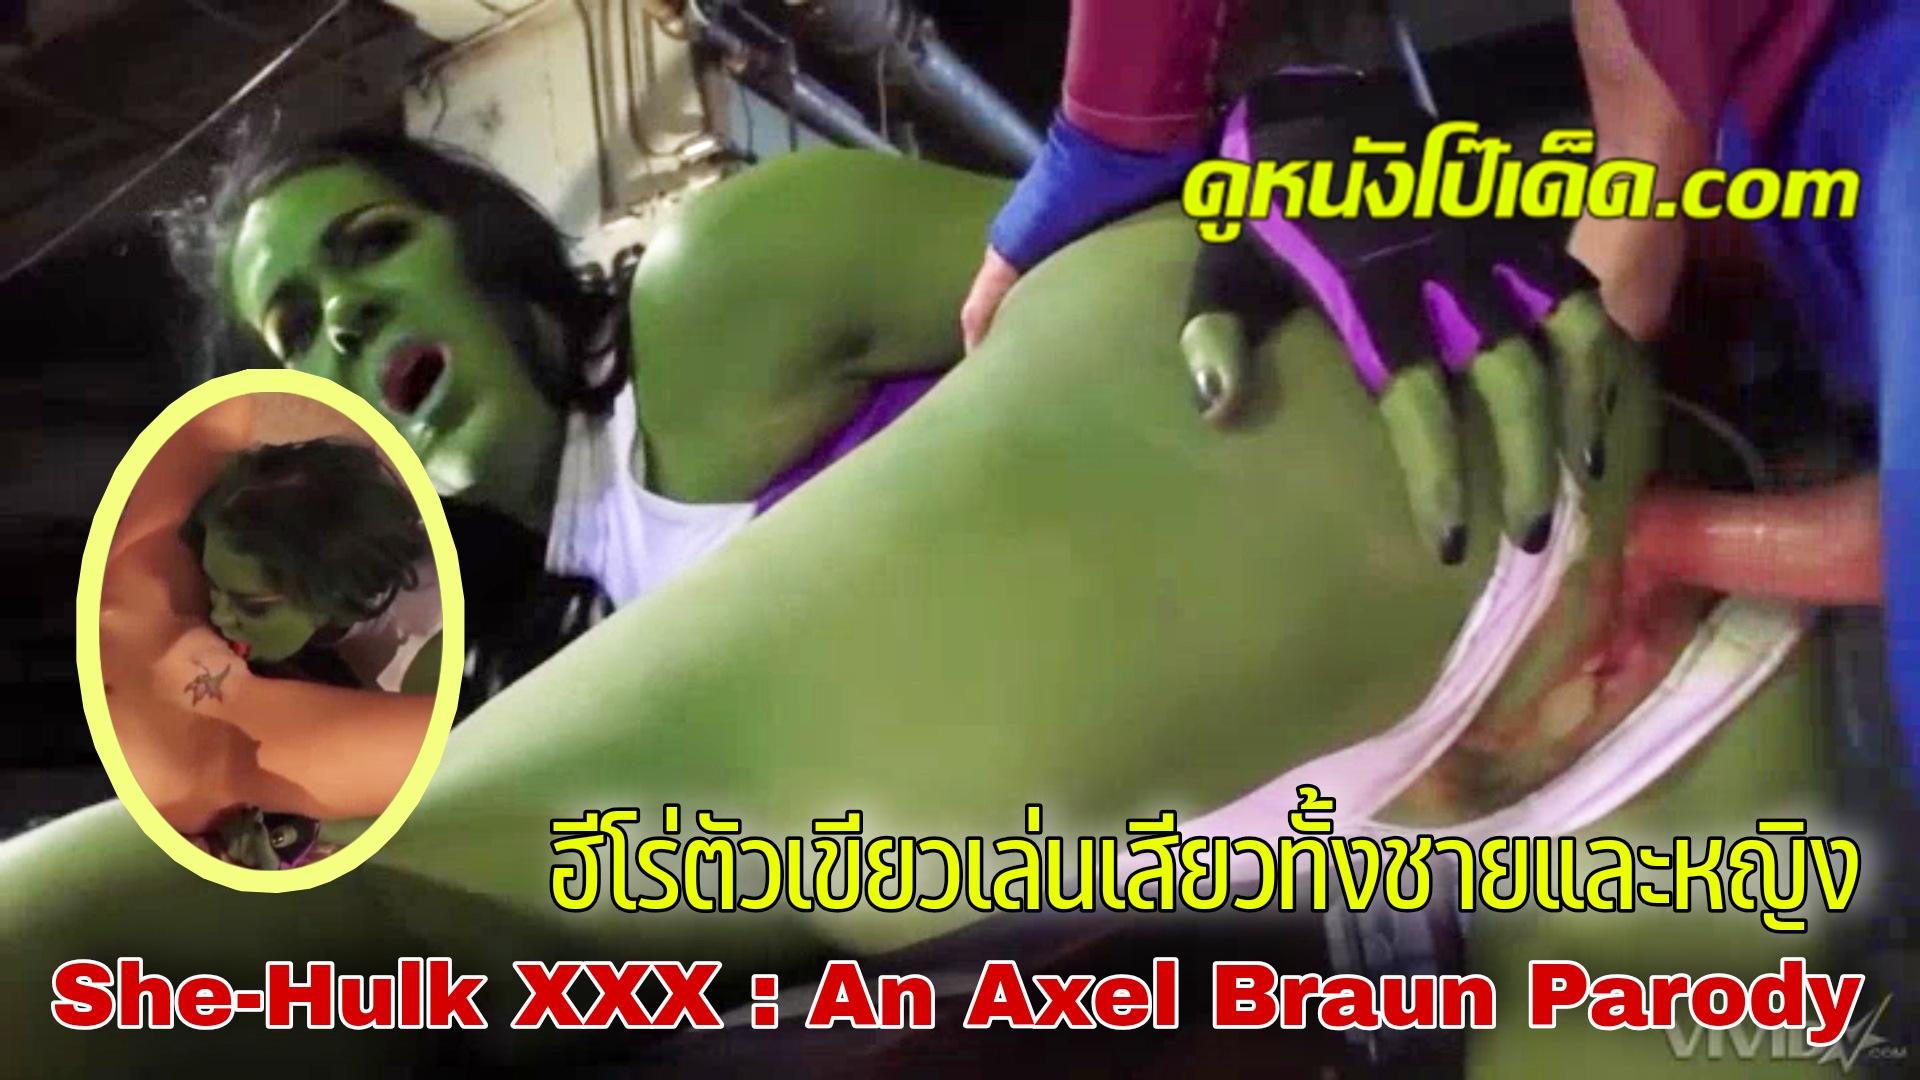 Wicked หนังxฝรั่งแนวล้อเลียน She-Hulk XXX : An Axel Braun Parody ชีฮัลค์ ฮีโร่สาวตัวเขียวนมบึ้ม Chyna โดนควยใหญ่เสียบเข้ารูหี เย็ดกันอย่างเมามันส์ ก่อนจะไปเล่นหีตีฉิ่งกับผู้หญิง แล้วกลับมาเย็ดกับฮีโร่ชายจนน้ำแตกใน